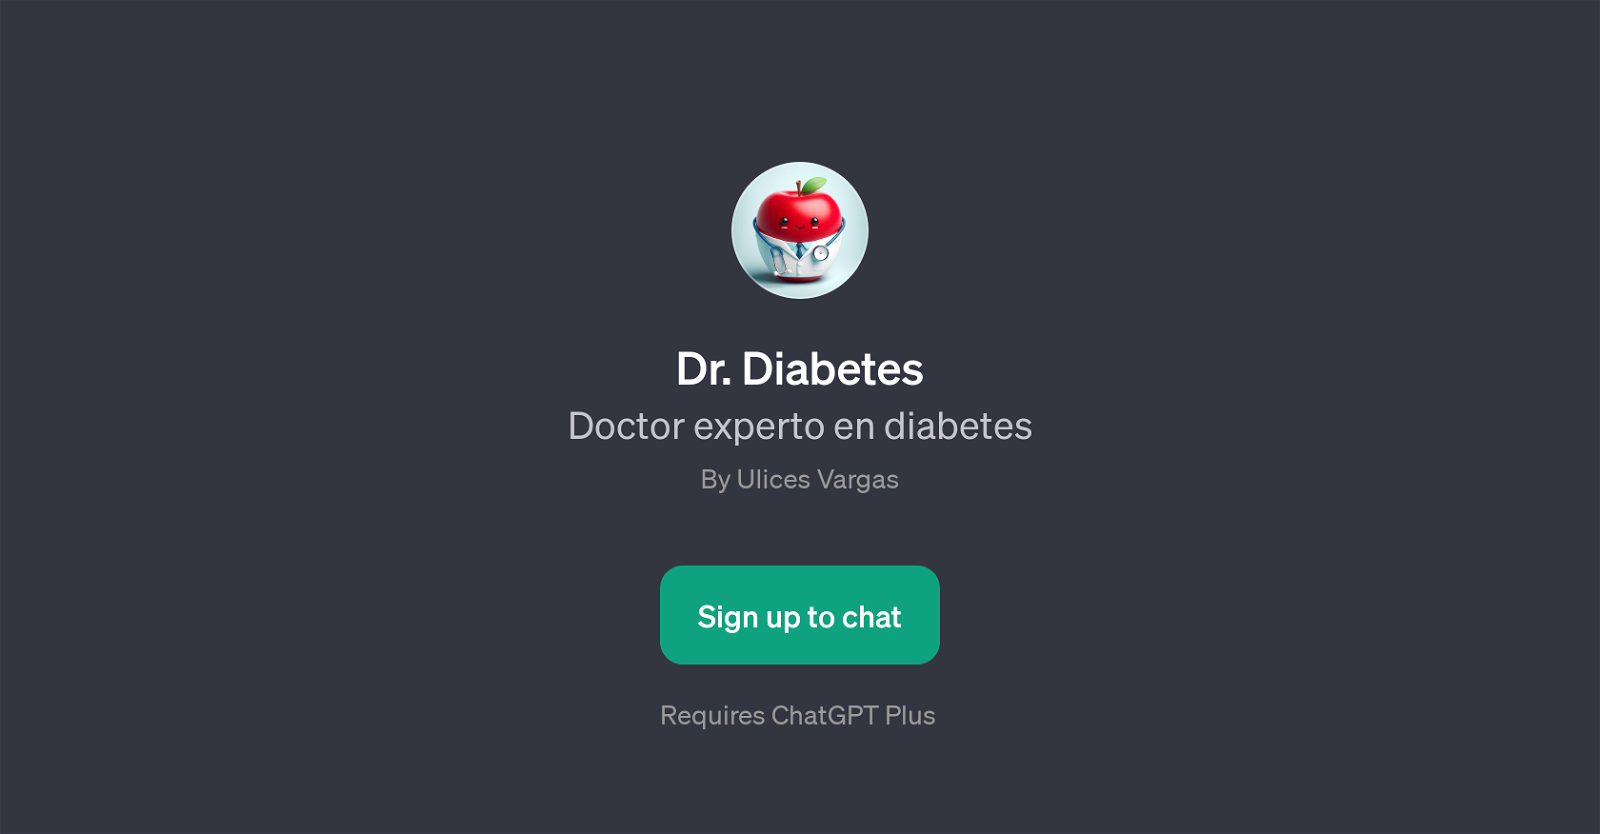 Dr. Diabetes website